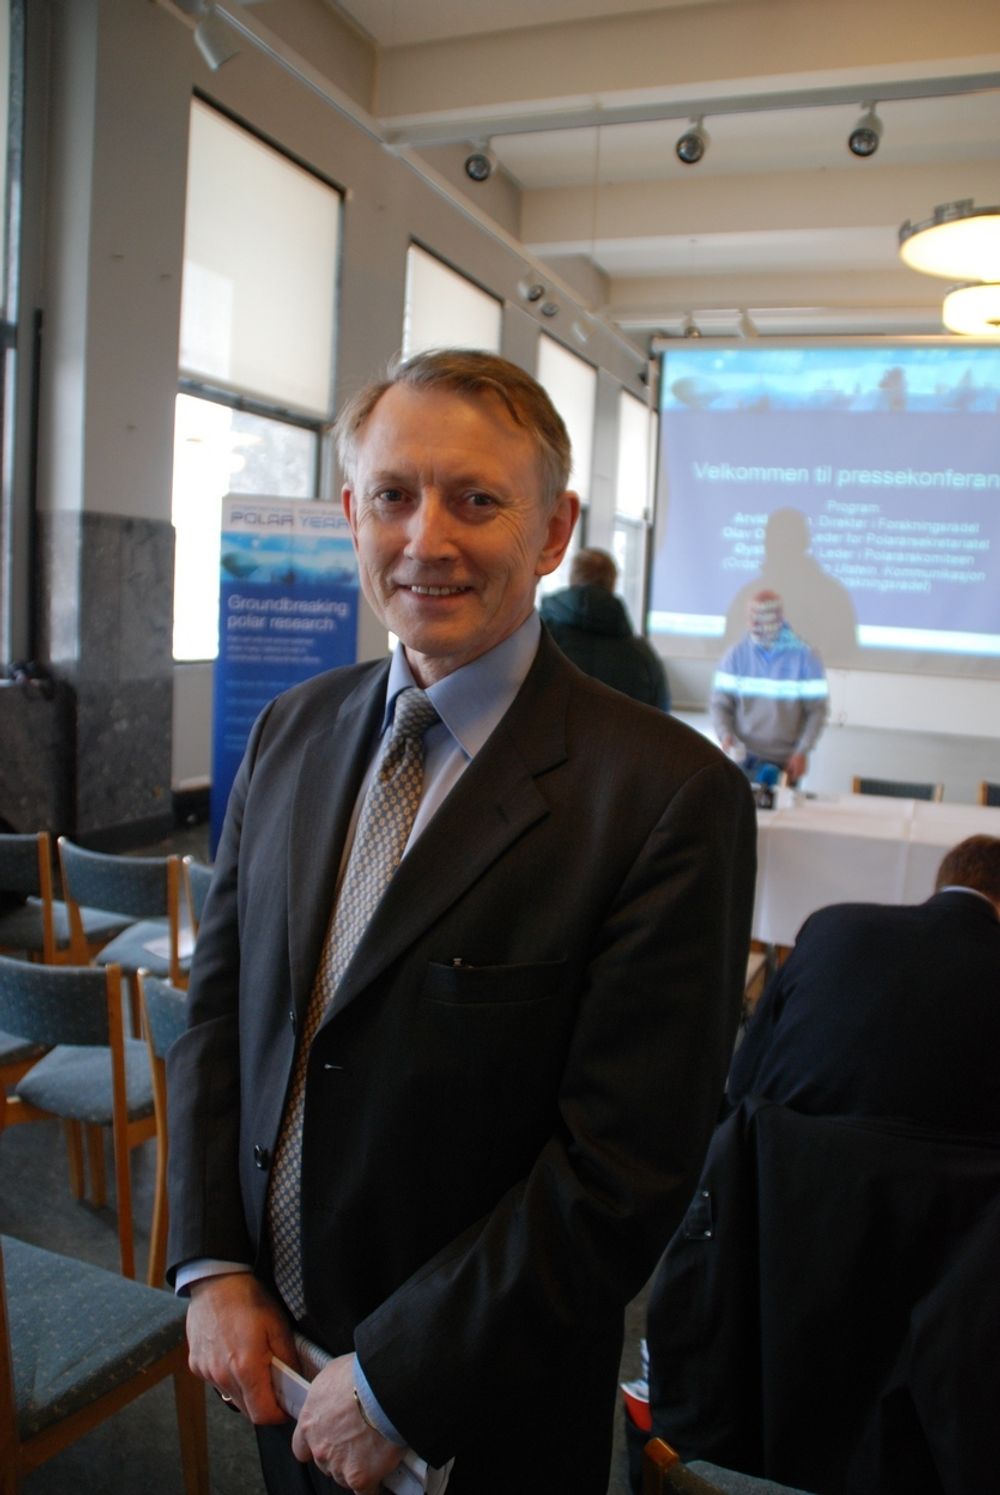 POLARSJEF: Forskningsrådets direktør Arvid Hallén presenterte forskningsplanene etter polarshowet på Rådhusplassen. Forskningsrådet administrerer Polaråret i Norge.